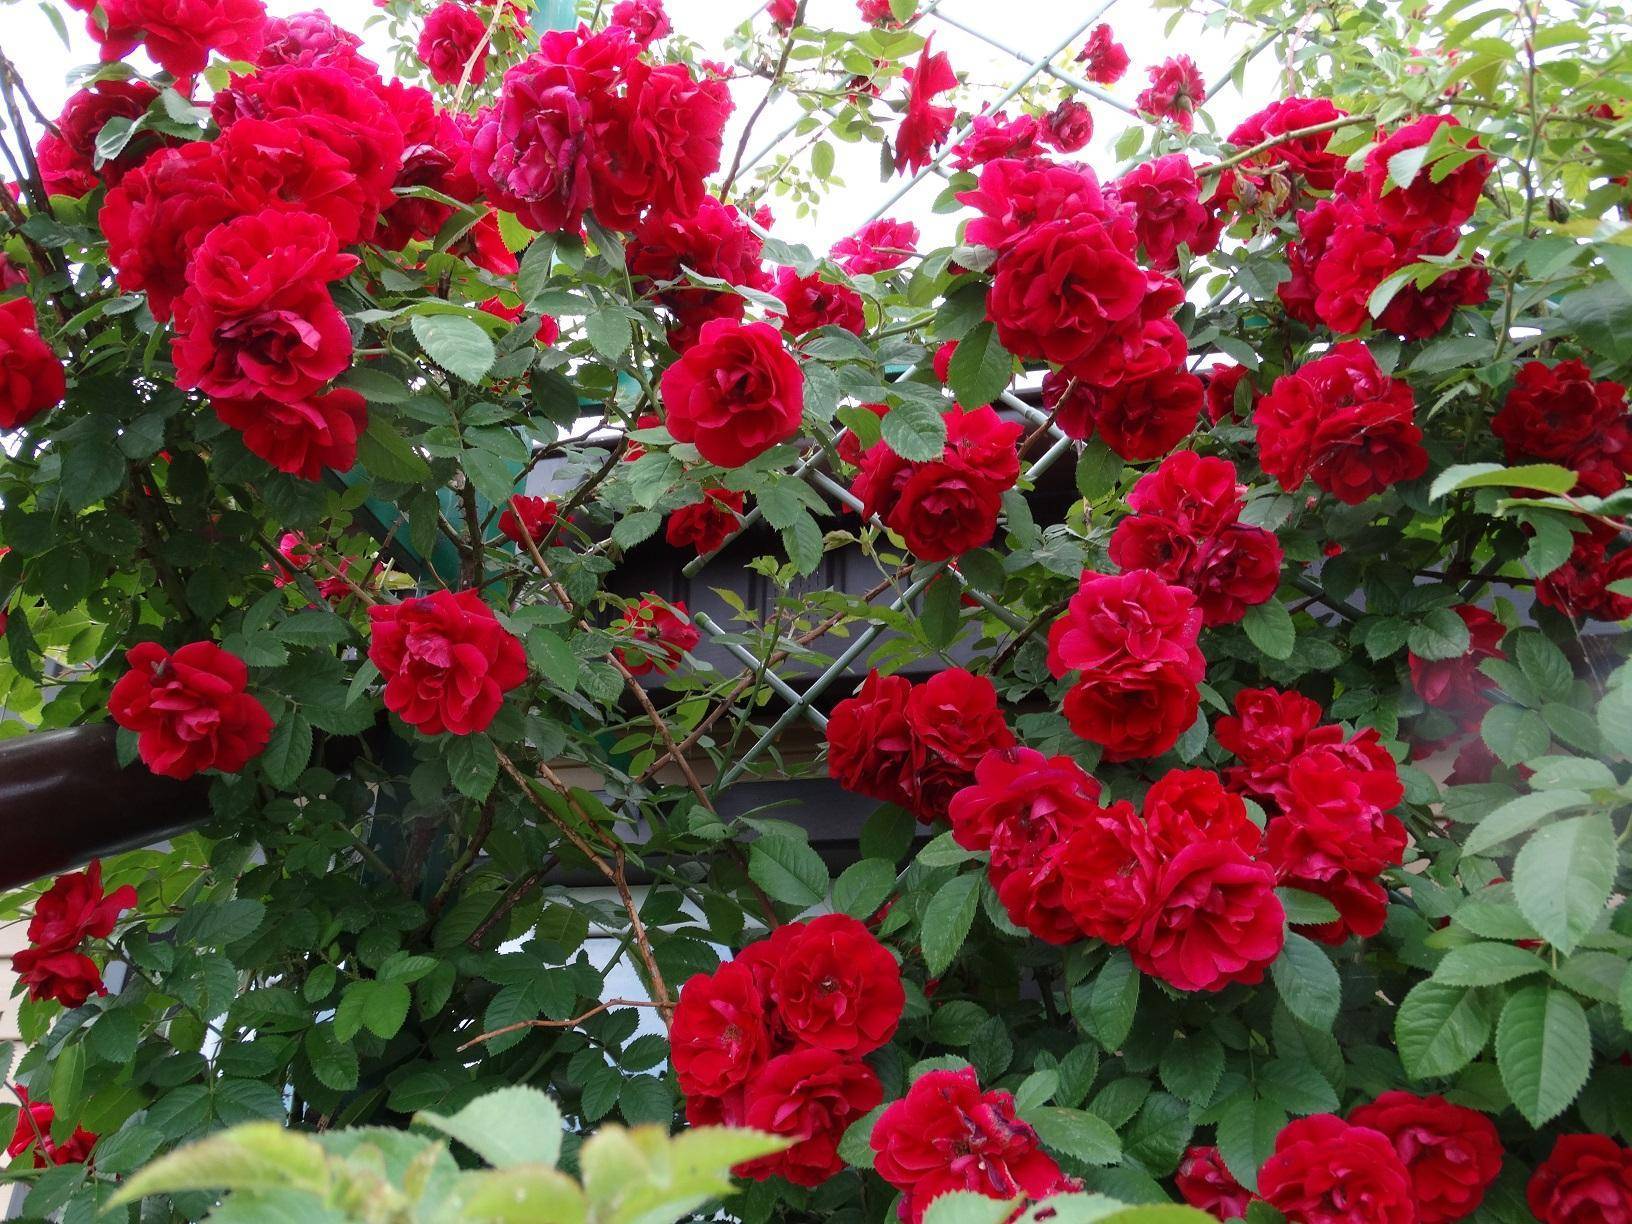 Роза «амадеус» (22 фото): описание, характеристика и размеры плетистого сорта роз, отзывы